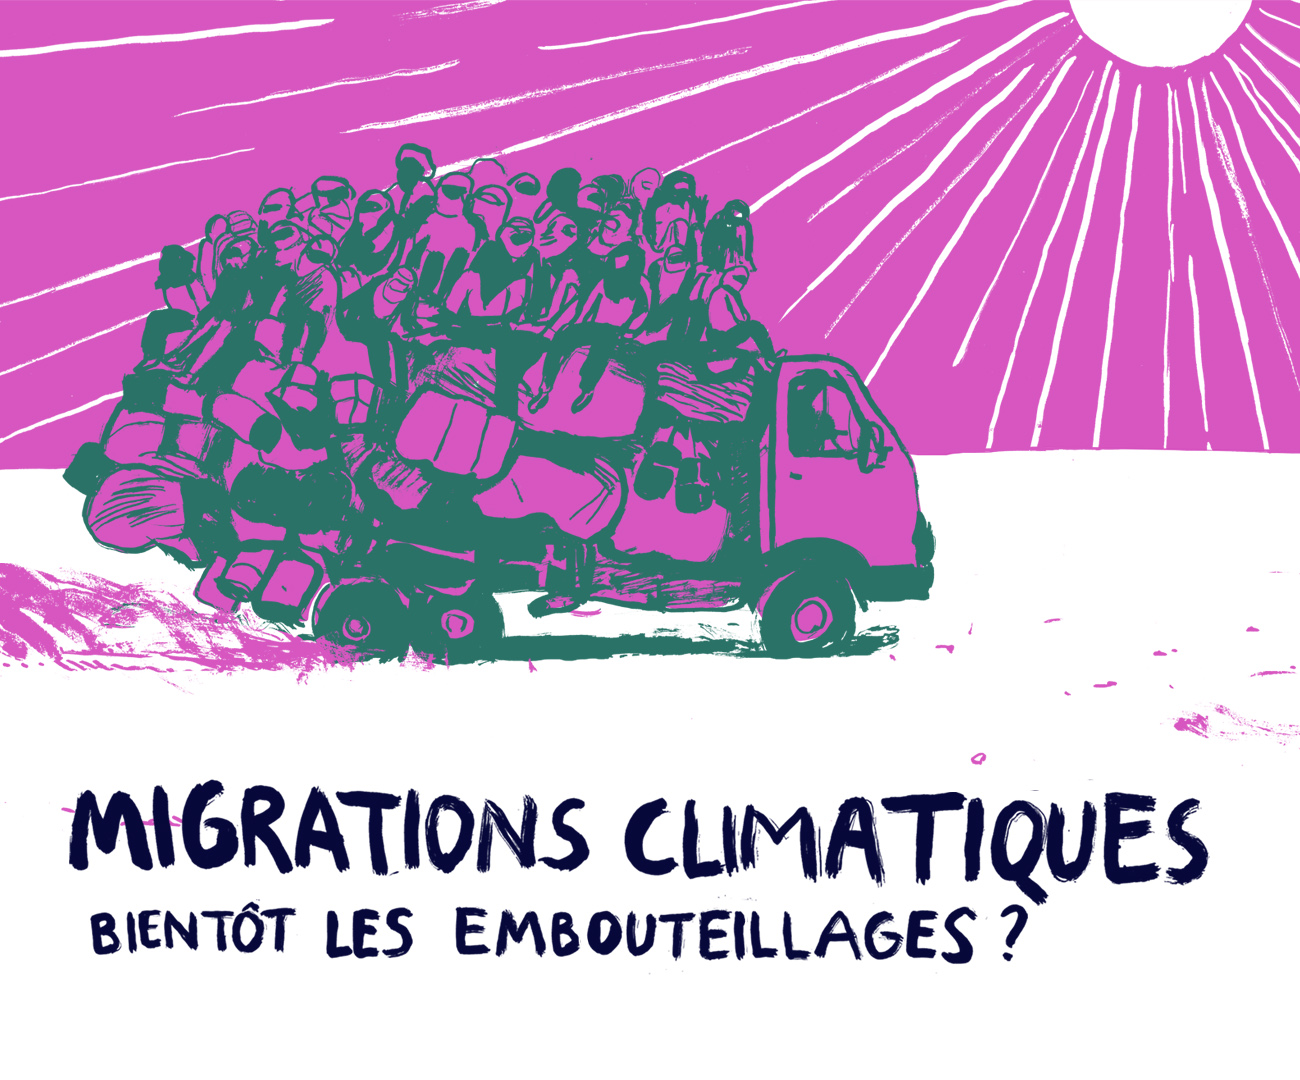 Migrations climatiques : bientôt les embouteillages ? © Benoît Guillaume